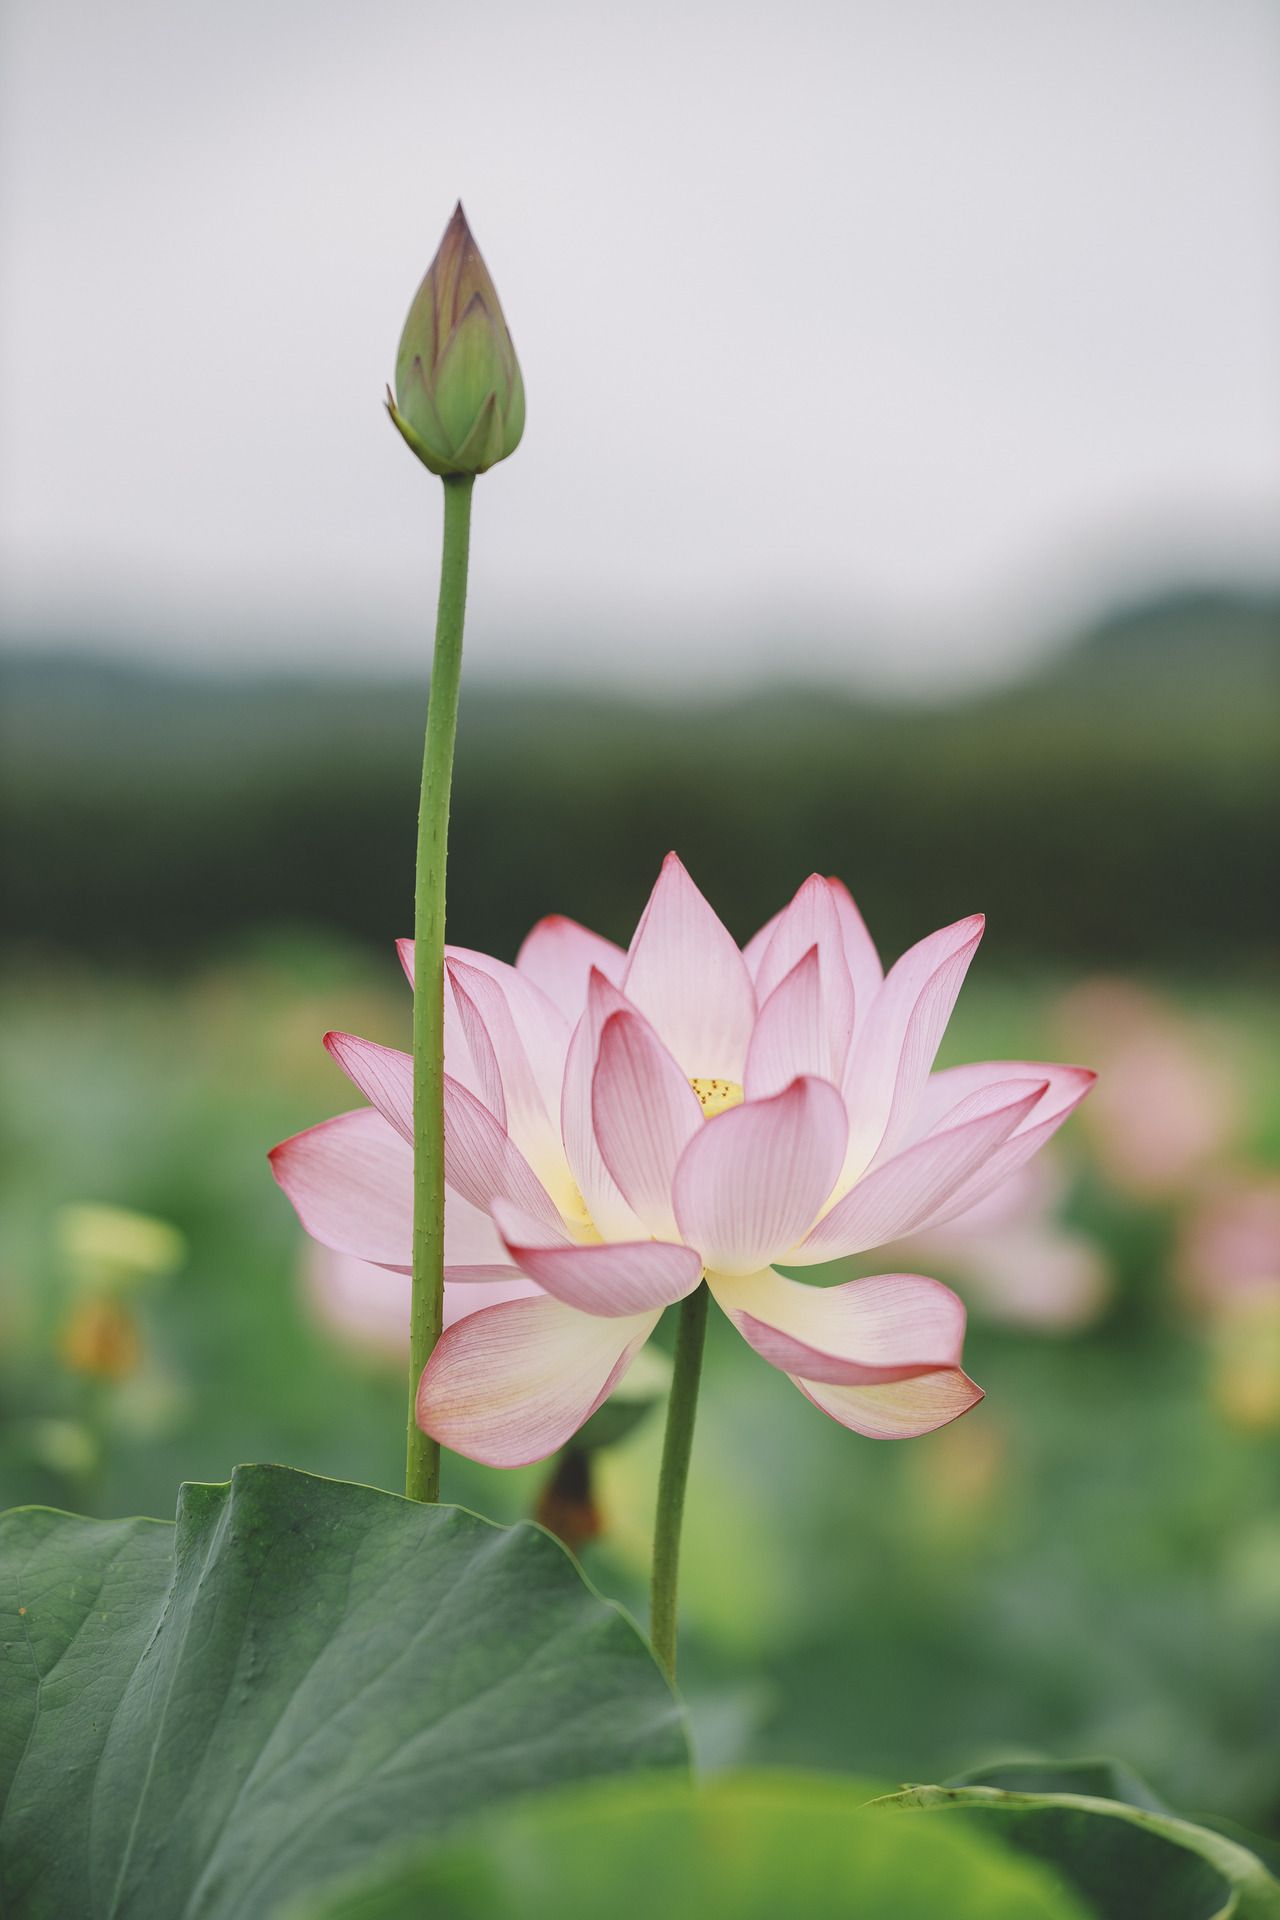 Tải bộ hình nền hoa sen tuyệt đẹp cho điện thoại iPhone  White flowers  Flower pictures Water lilies